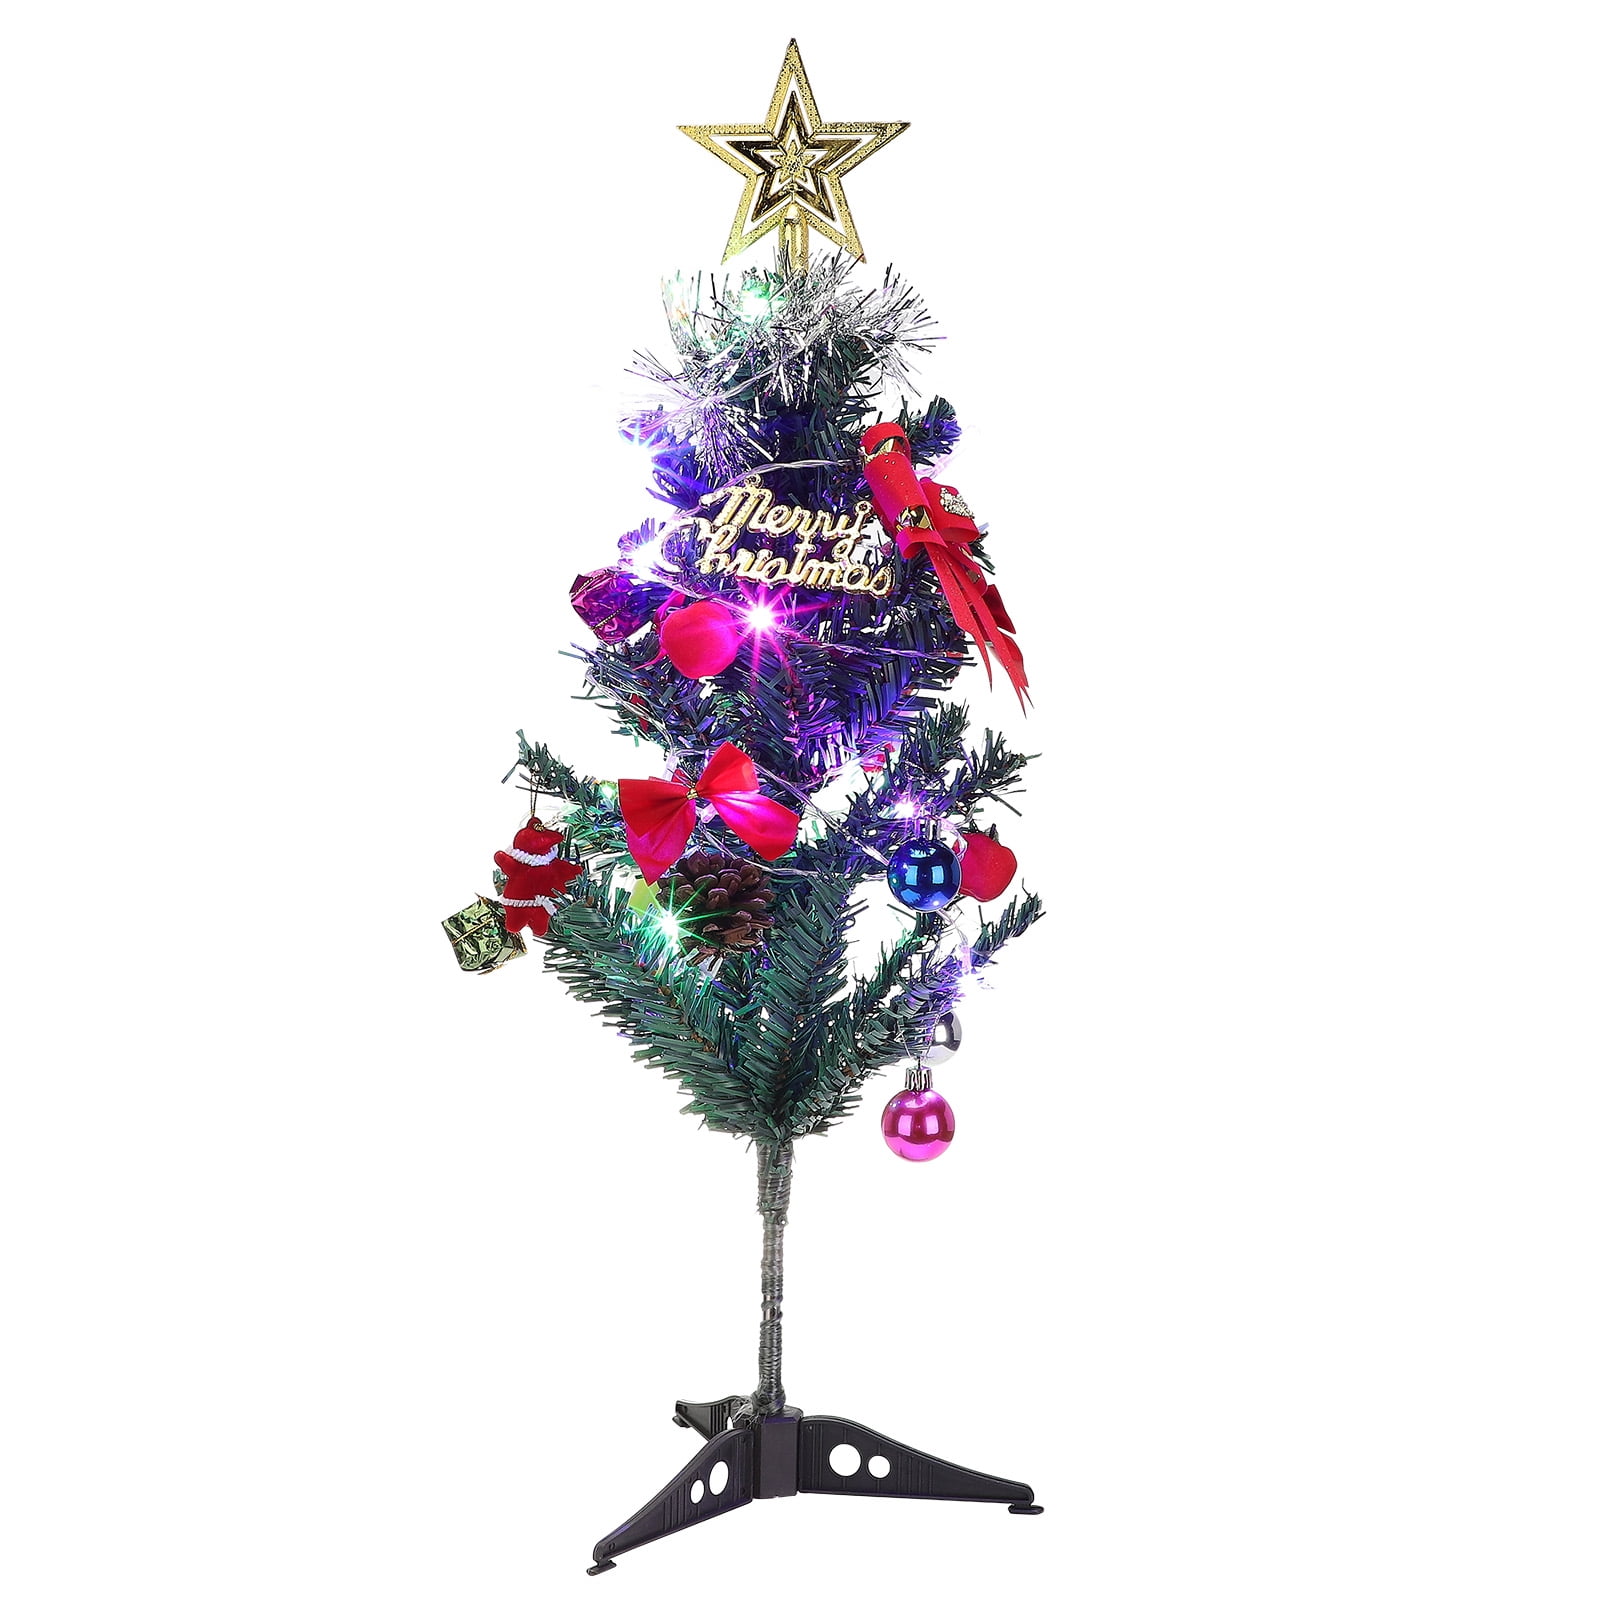 Details about   32cm Tisch LED Weihnachtsbaum Nachtlicht Licht Kiefer Mini Xmas Tree Decor 